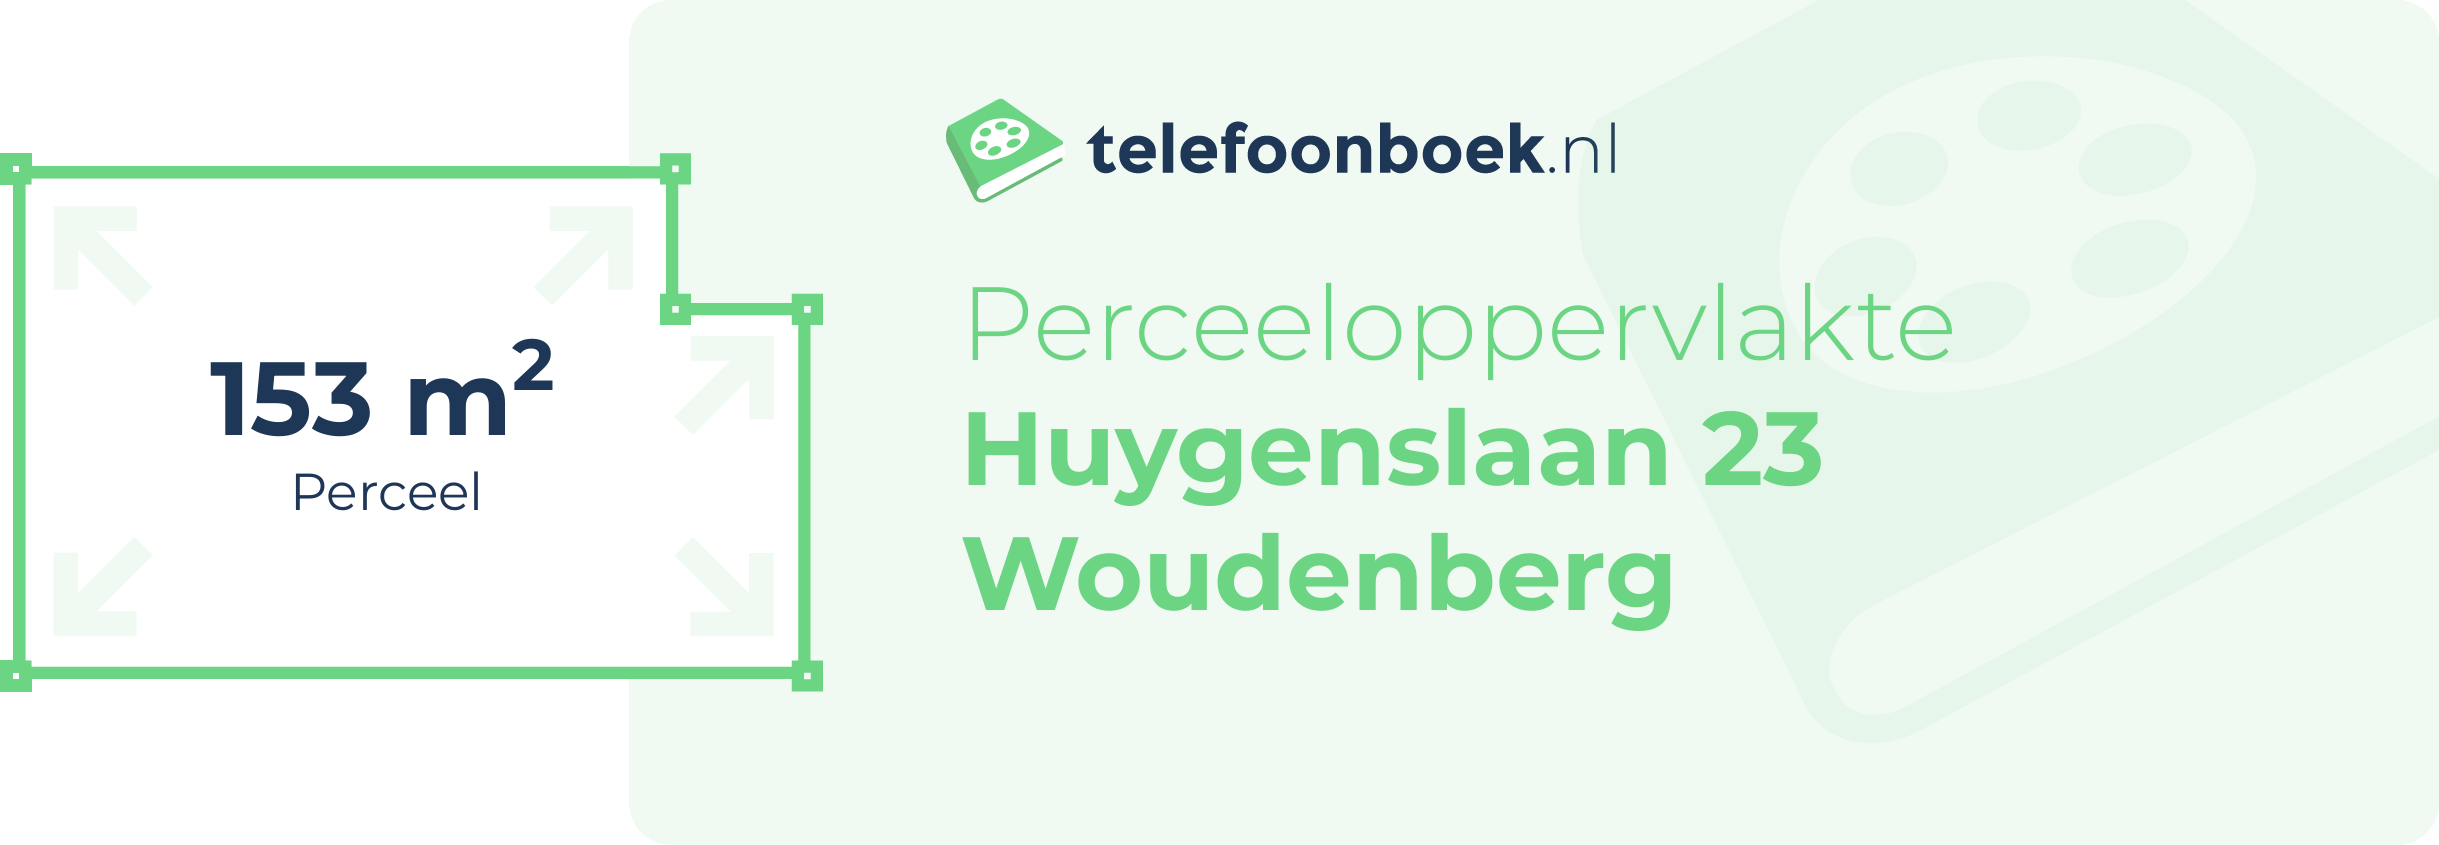 Perceeloppervlakte Huygenslaan 23 Woudenberg